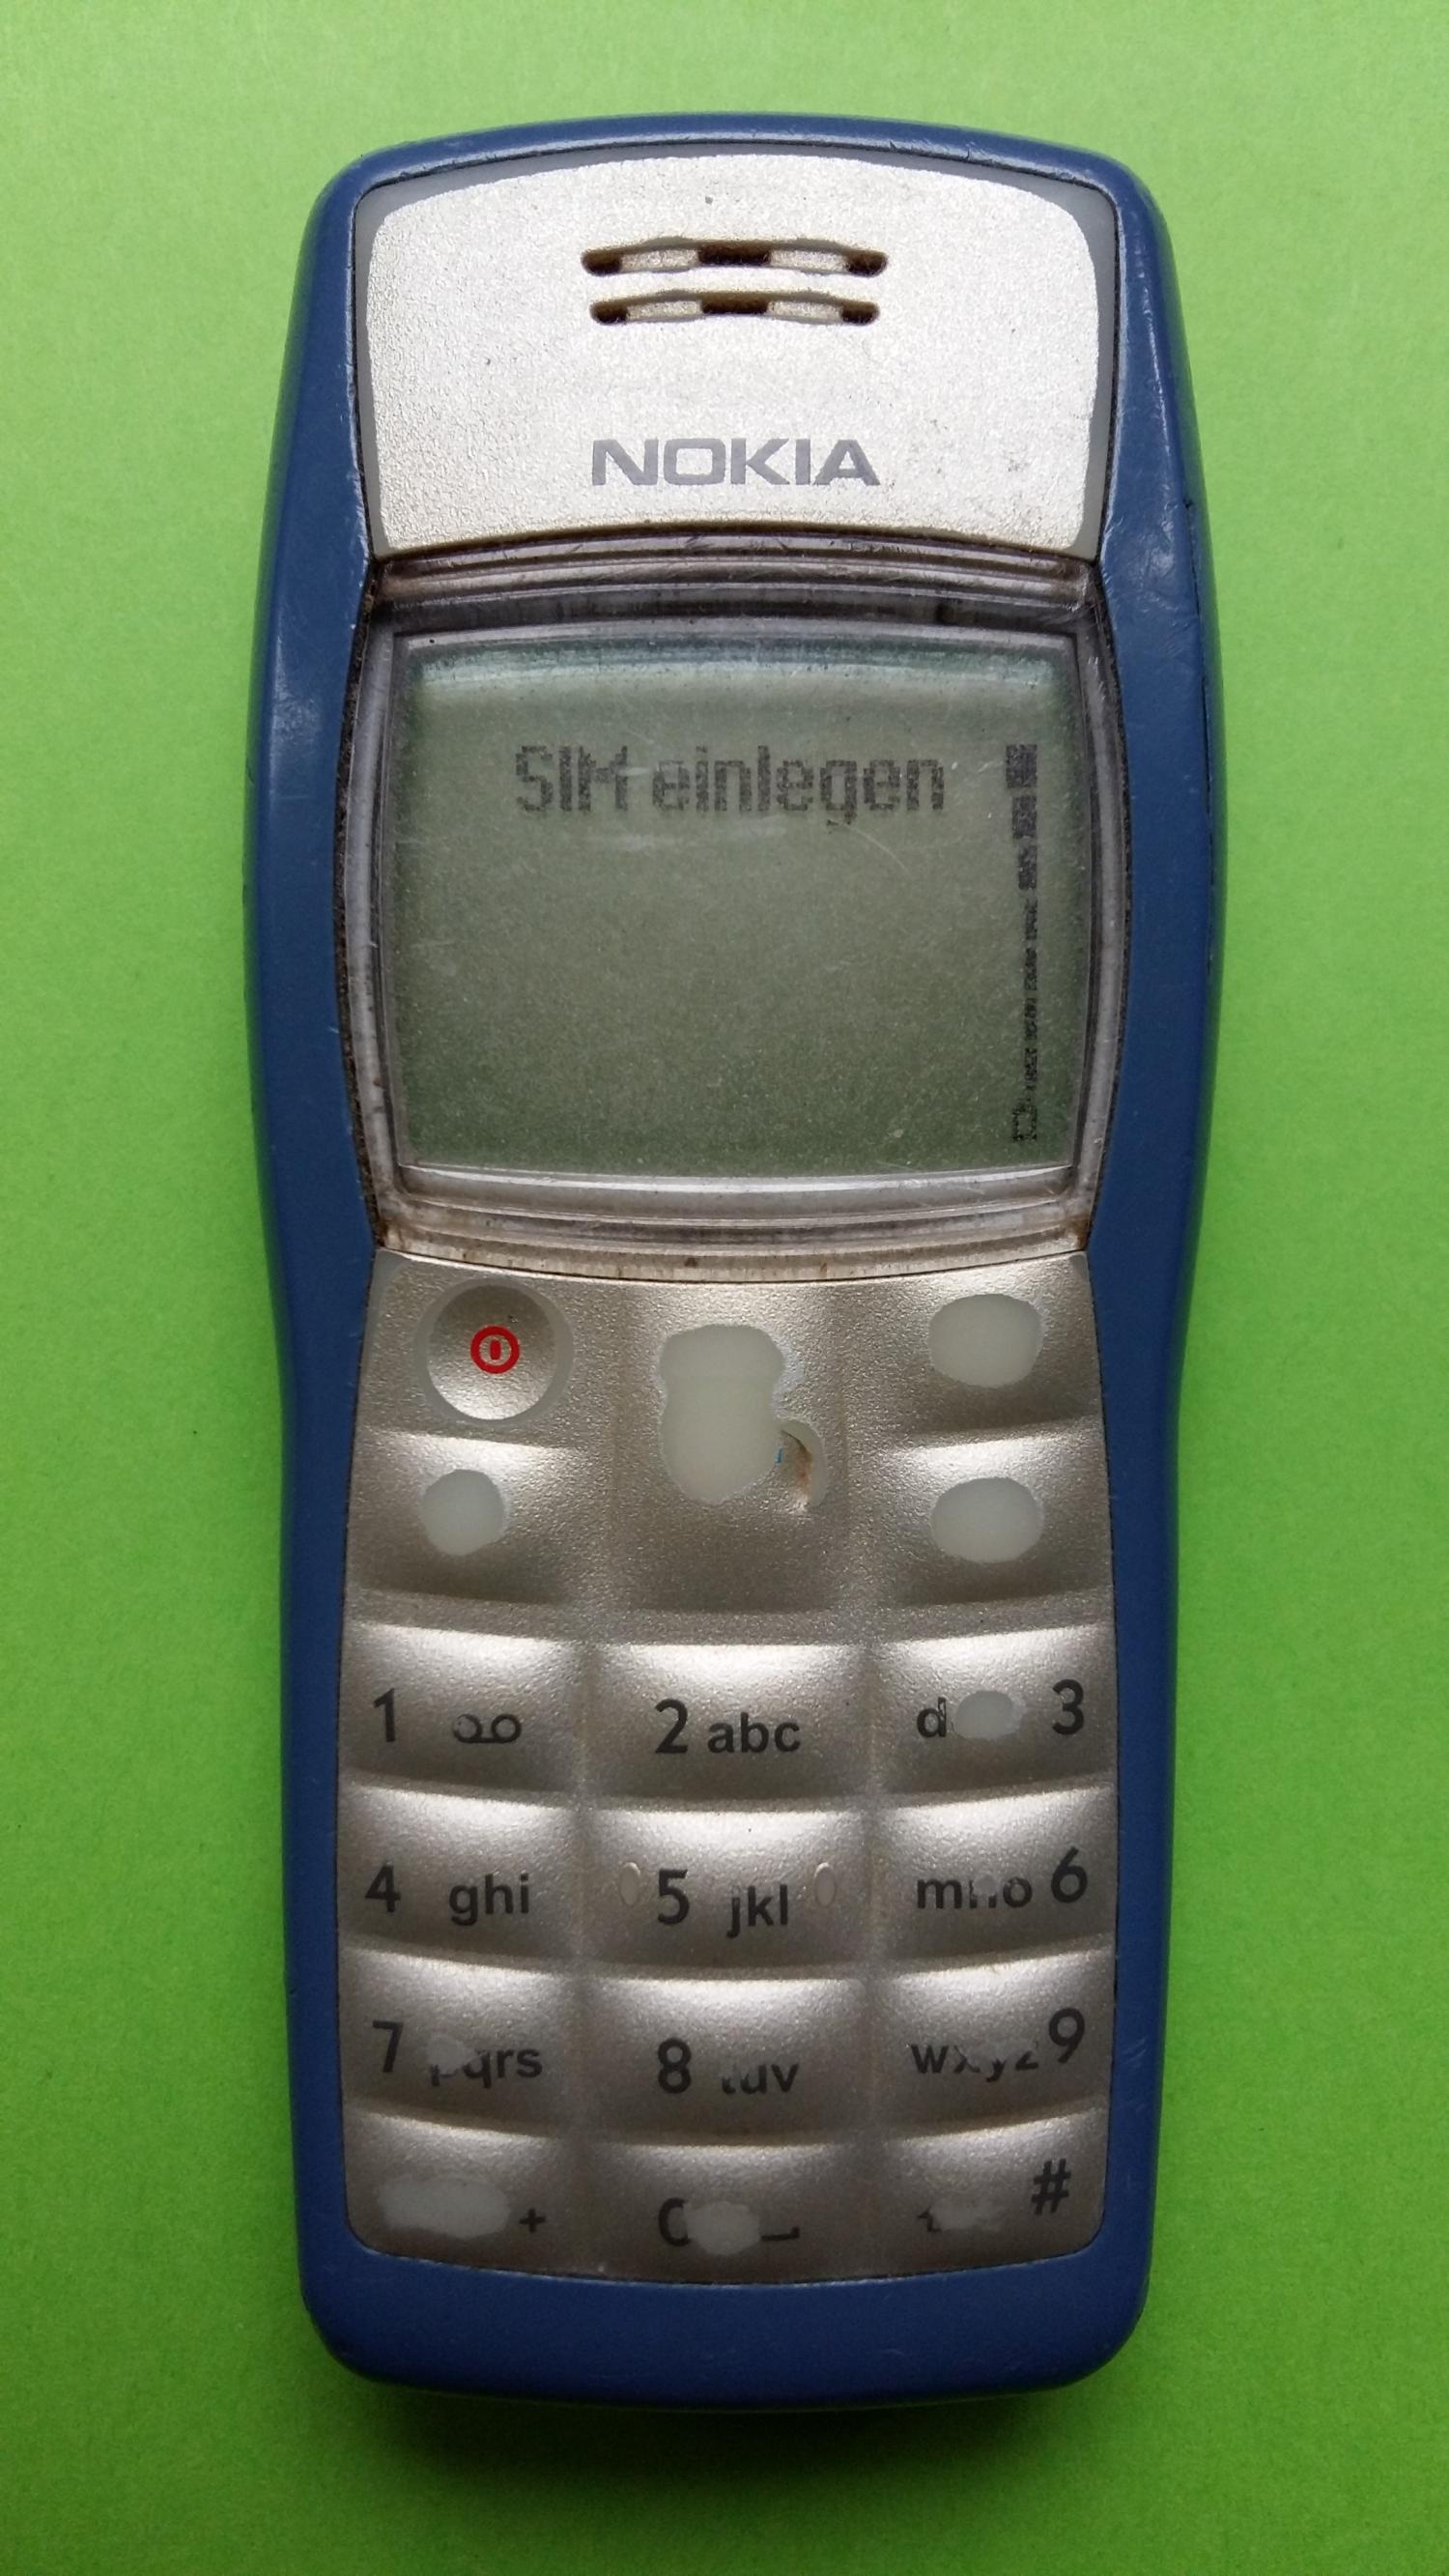 image-7300318-Nokia 1100 (6)1.jpg